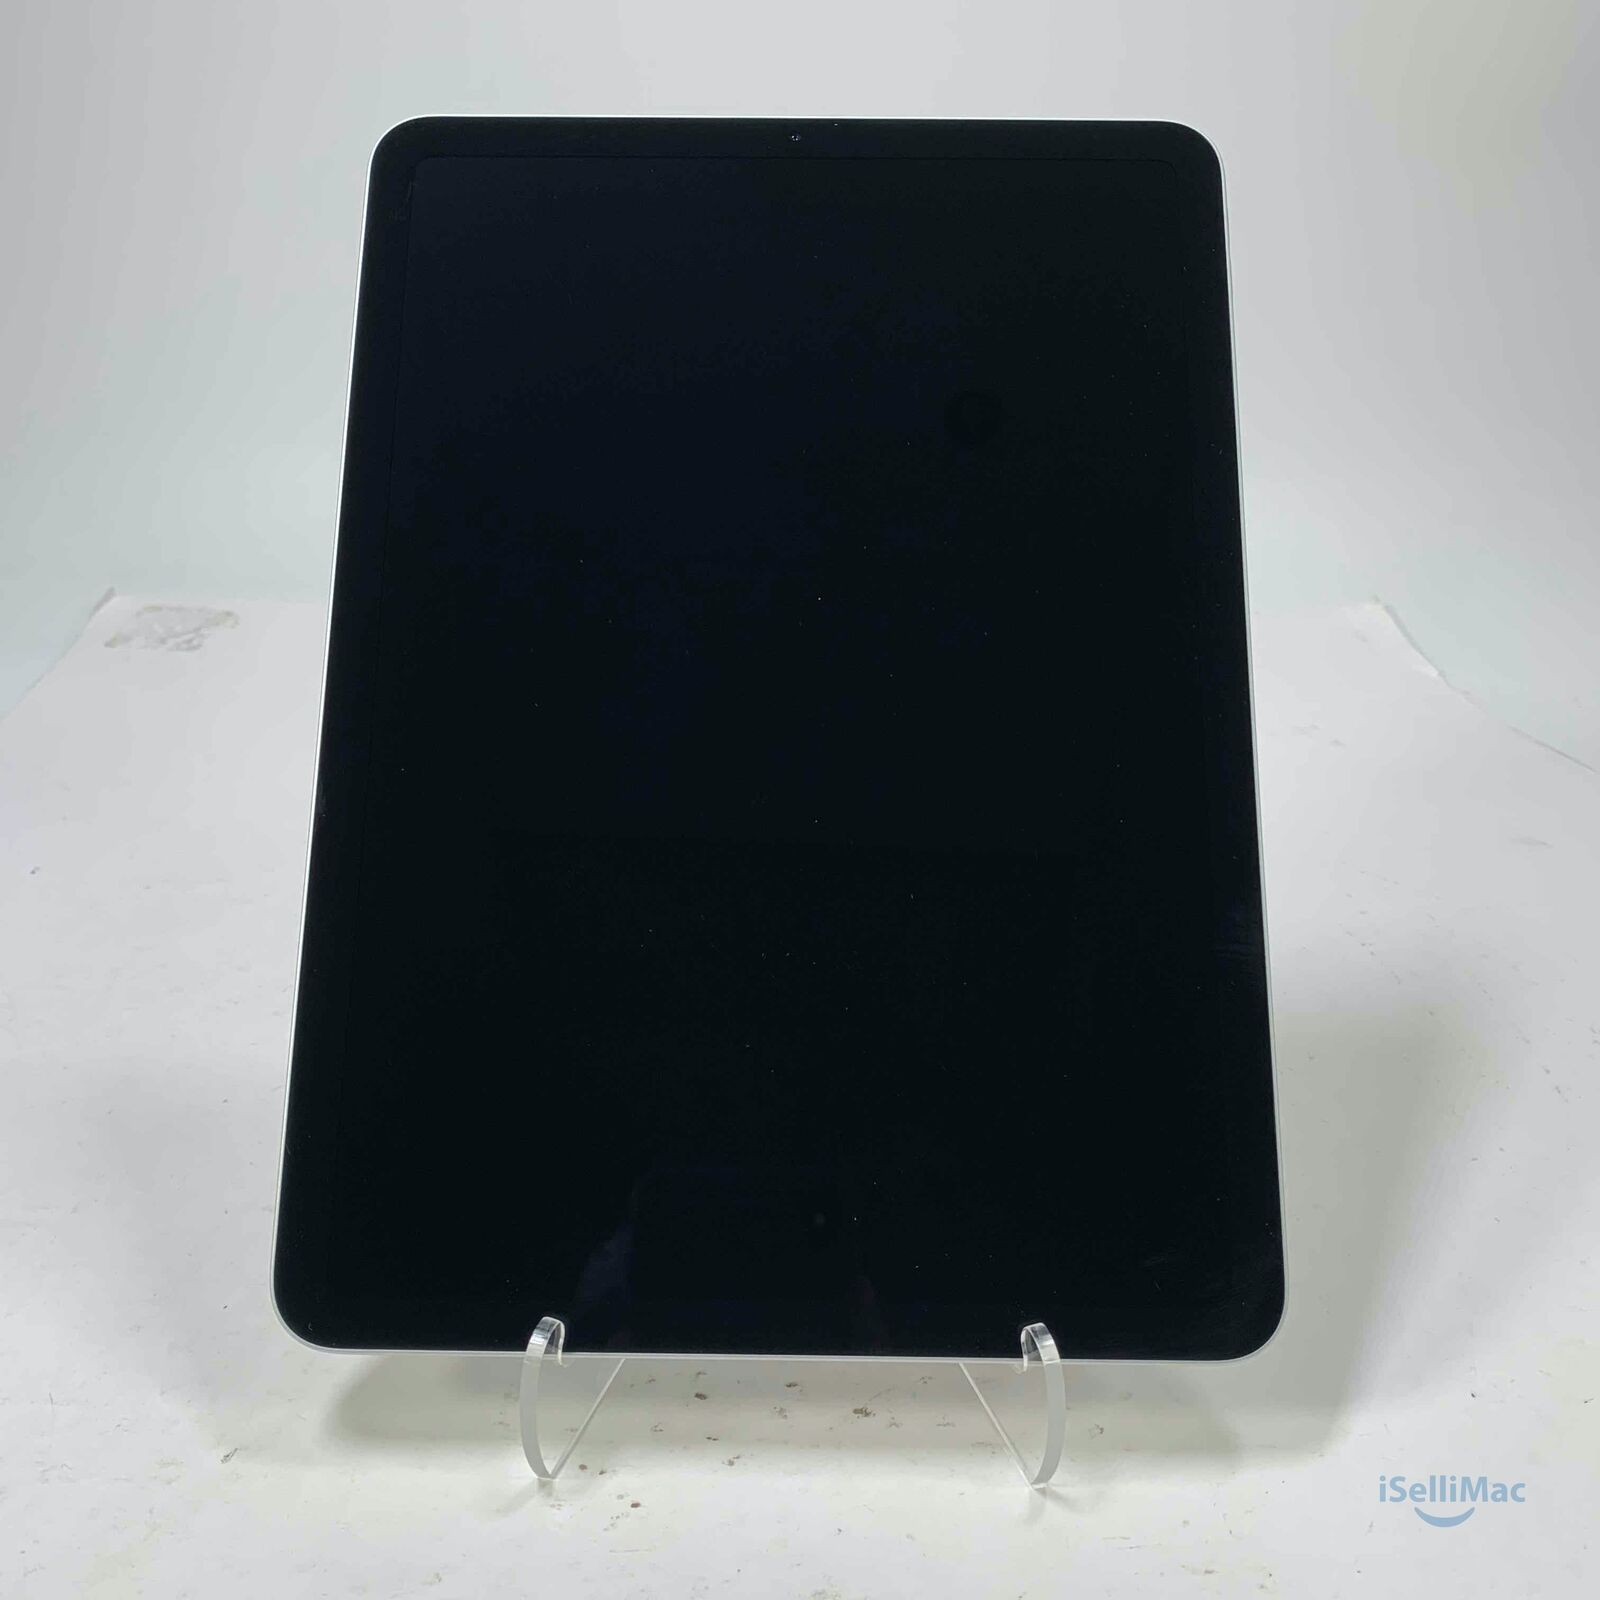 Apple iPad Air 4 64GB Silver A2324 MYHX2LL/A +A Grade + Warranty!